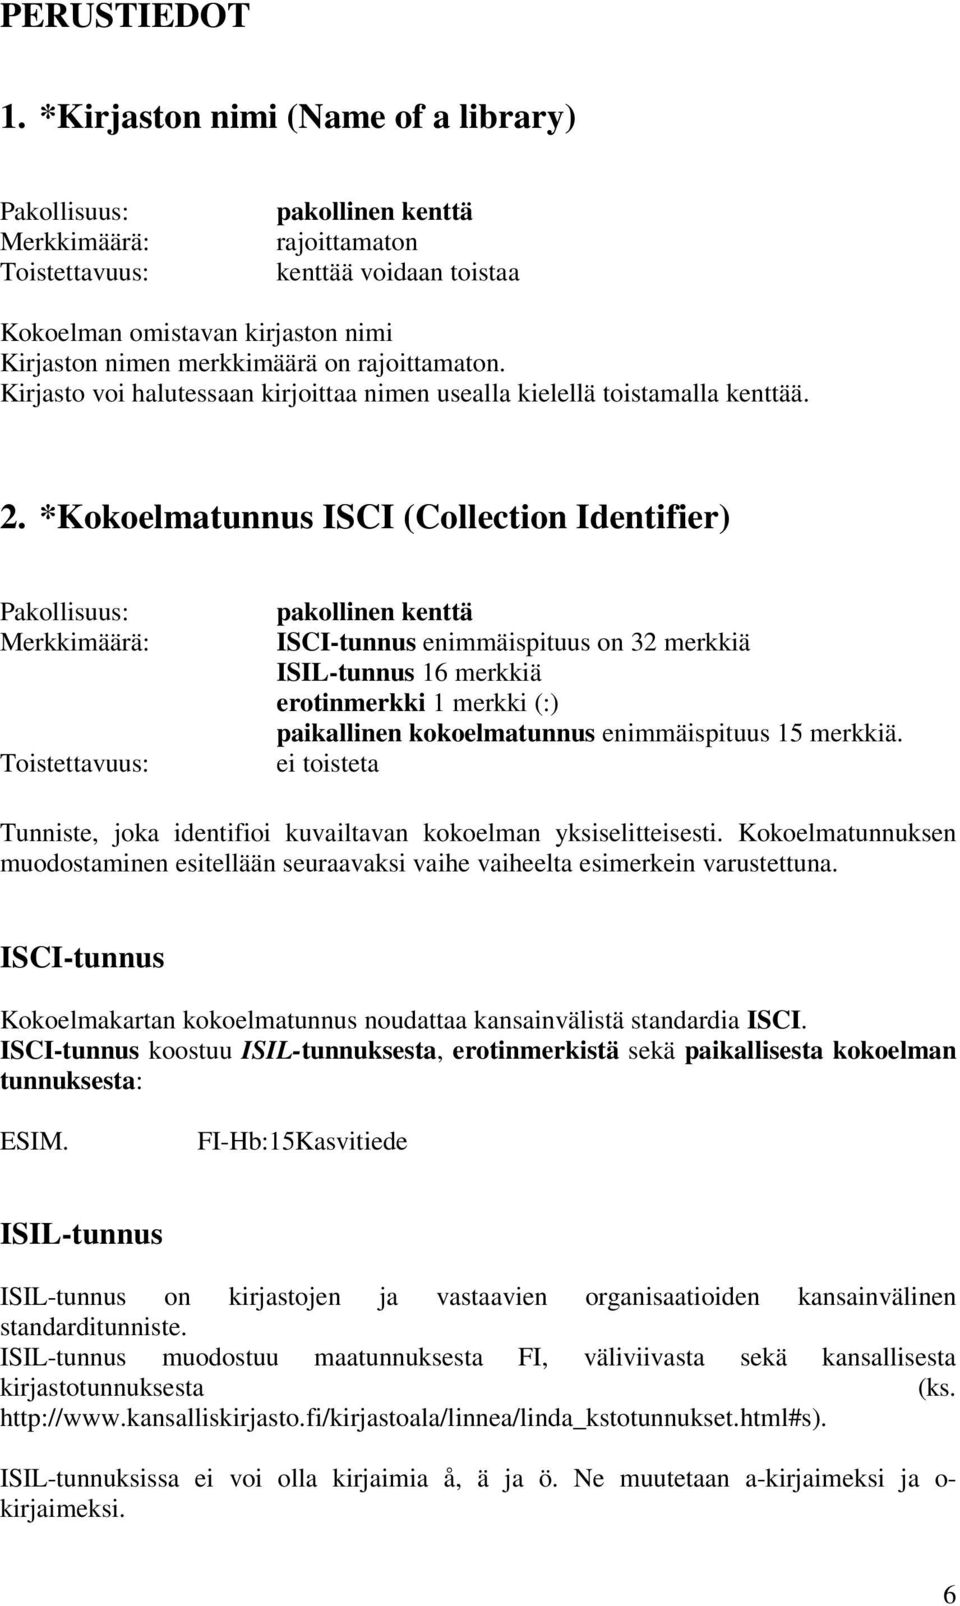 *Kokoelmatunnus ISCI (Collection Identifier) pakollinen kenttä ISCI-tunnus enimmäispituus on 32 merkkiä ISIL-tunnus 16 merkkiä erotinmerkki 1 merkki (:) paikallinen kokoelmatunnus enimmäispituus 15